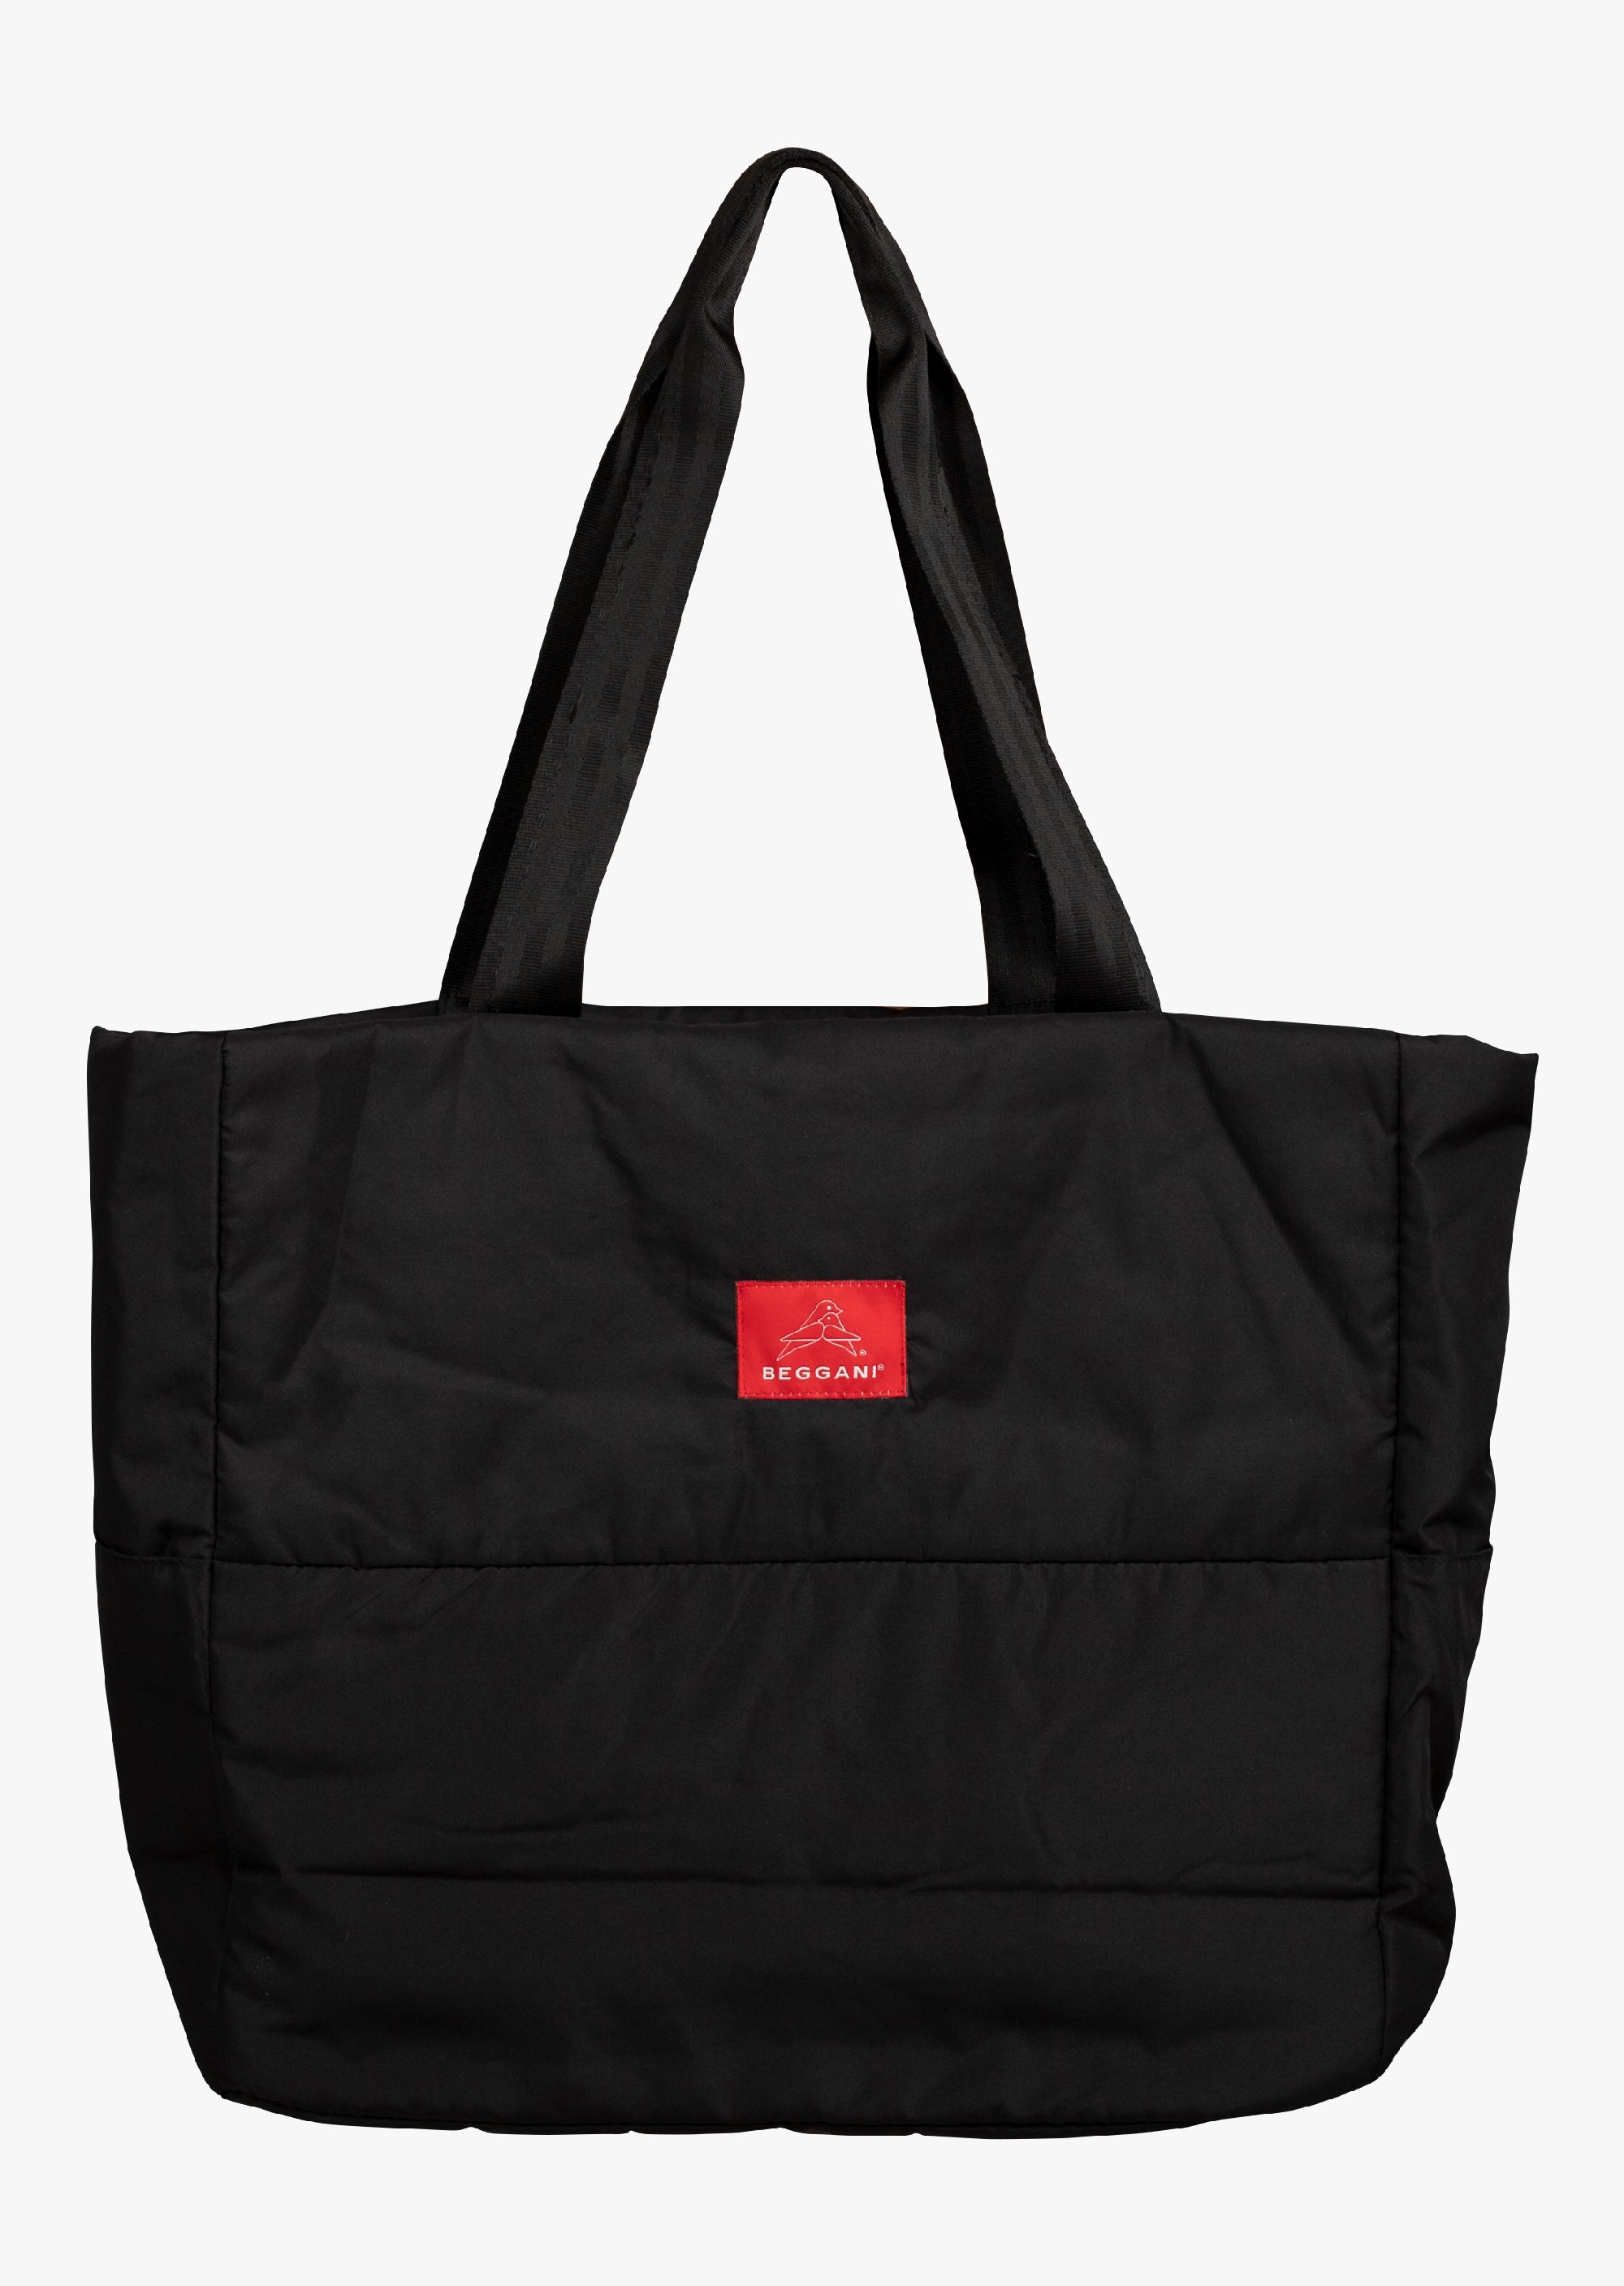 Shoulder bag with logo BEGGANI